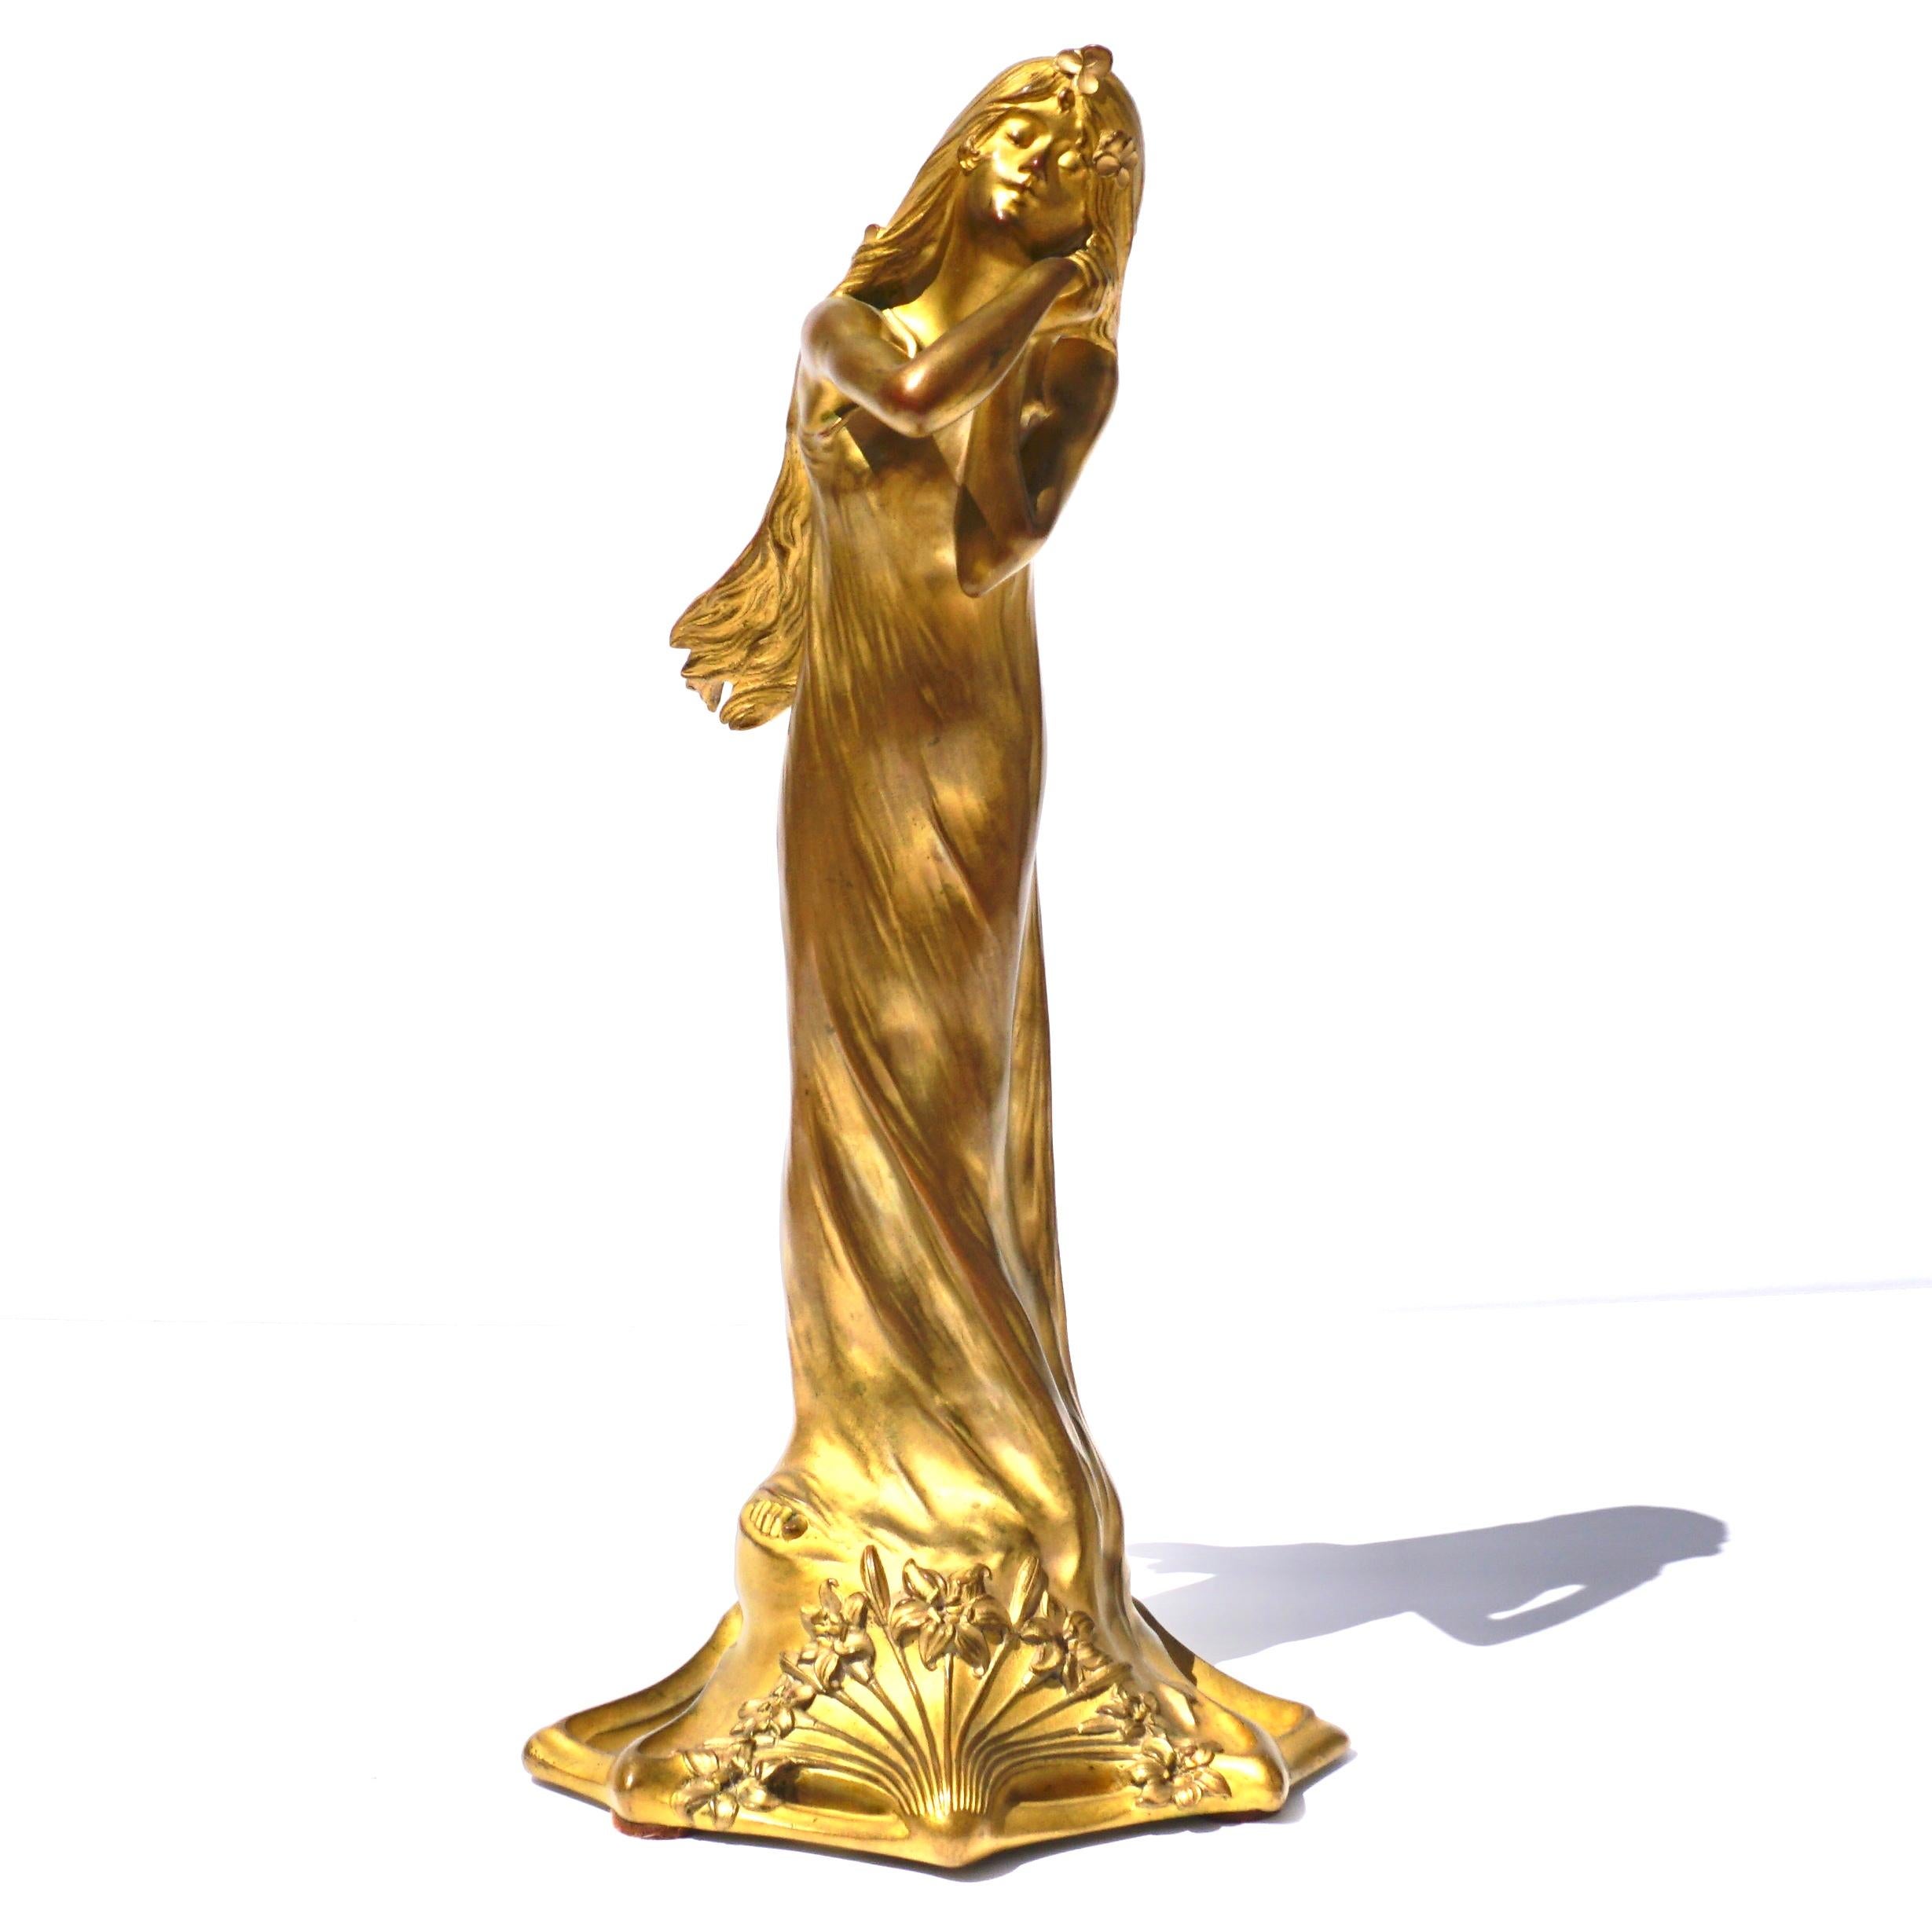 Charles Raphaël Peyre (français 1874-1949)

Figure de jeune fille en bronze doré de style Art nouveau français
Fonte par Louchet, vers 1900
Le modèle est debout, les mains jointes sur la joue, avec l'inscription Peyre et le cachet de la